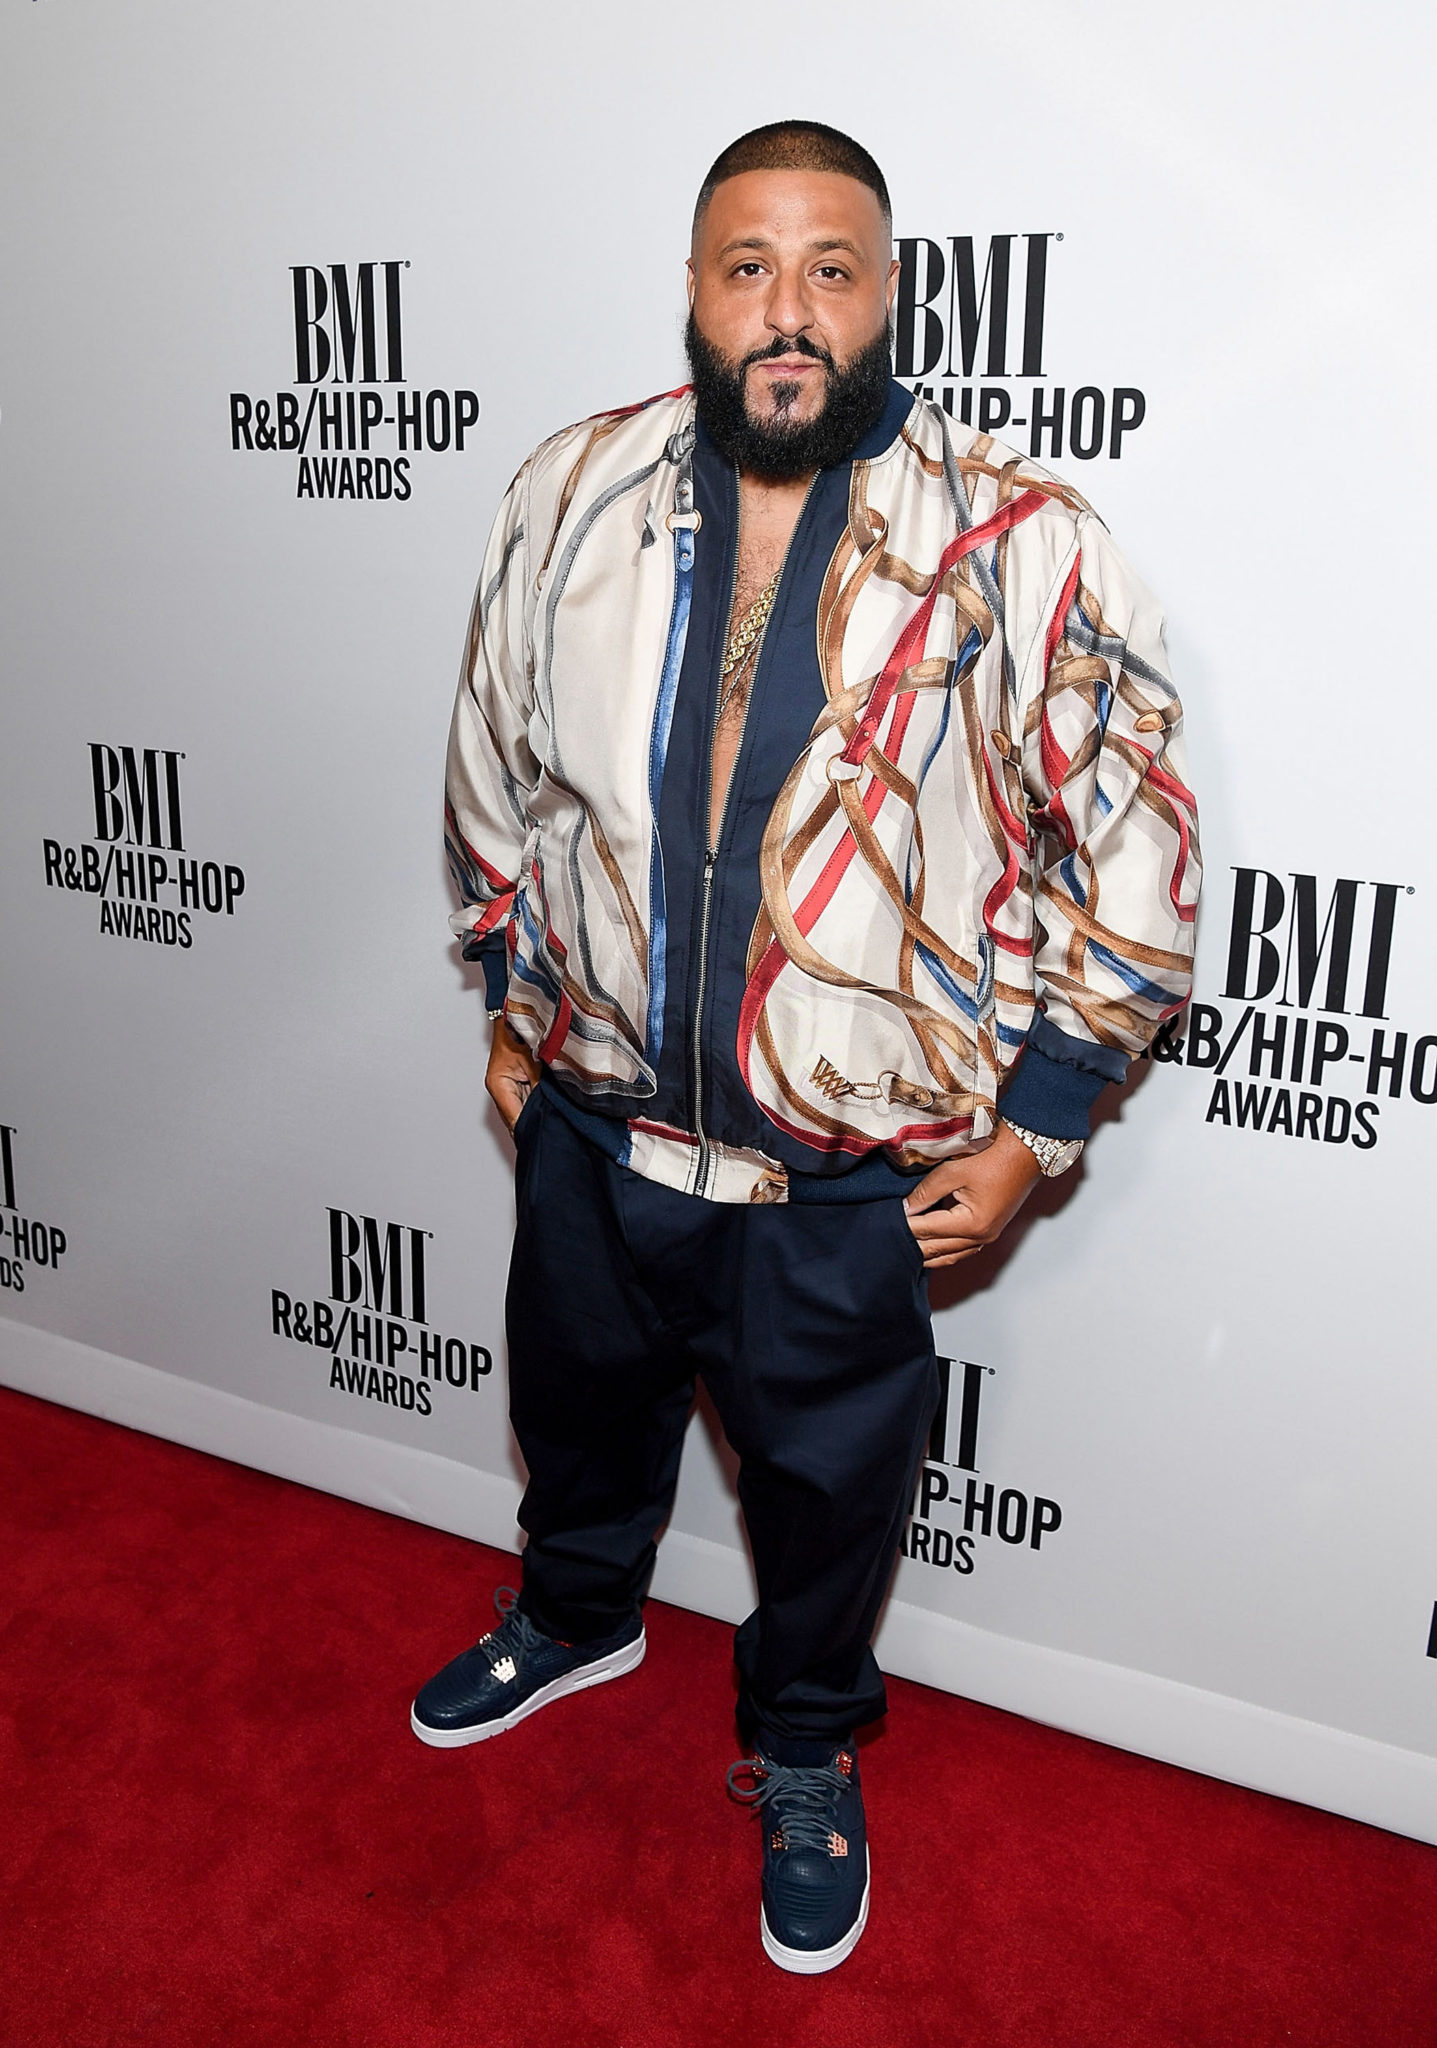 2016 BMI R&B/Hip-Hop Awards - Red Carpet